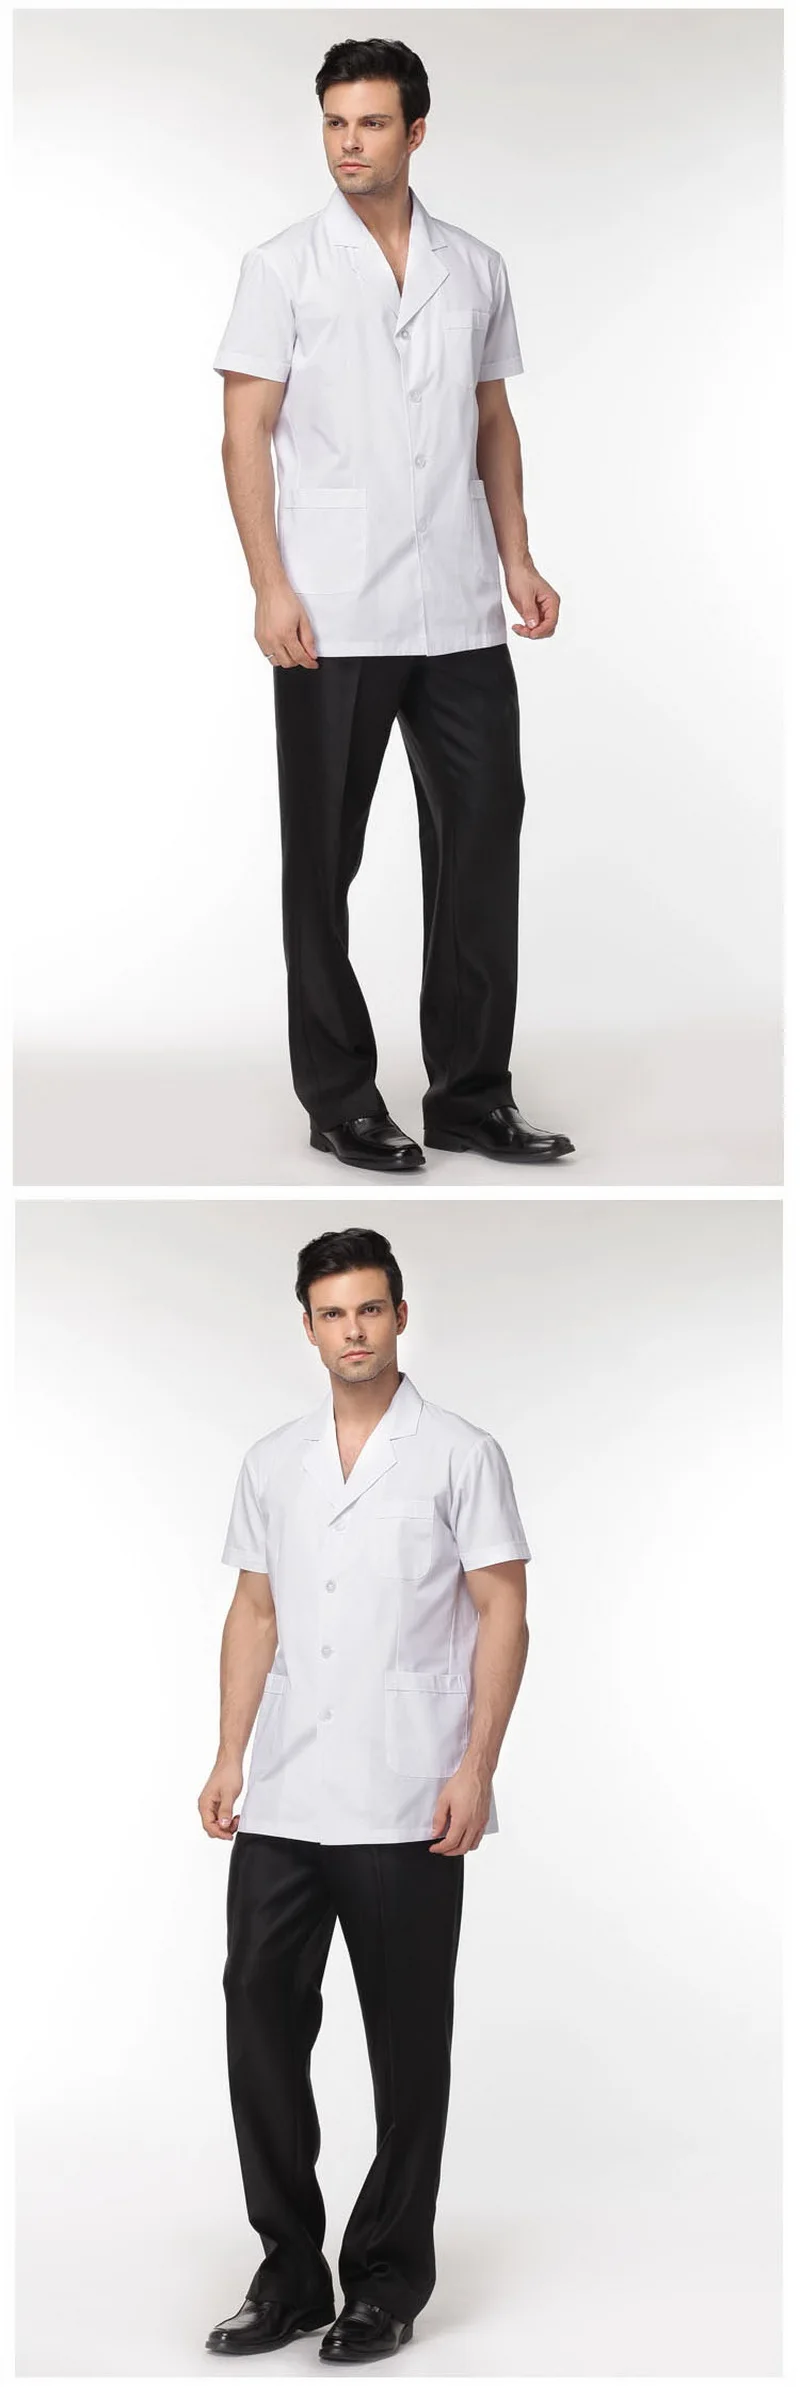 2018 новый врач медсестры Для мужчин белый скрабы медицинская одежда клинических медико халате больницы униформа Повседневная Обувь Одежда